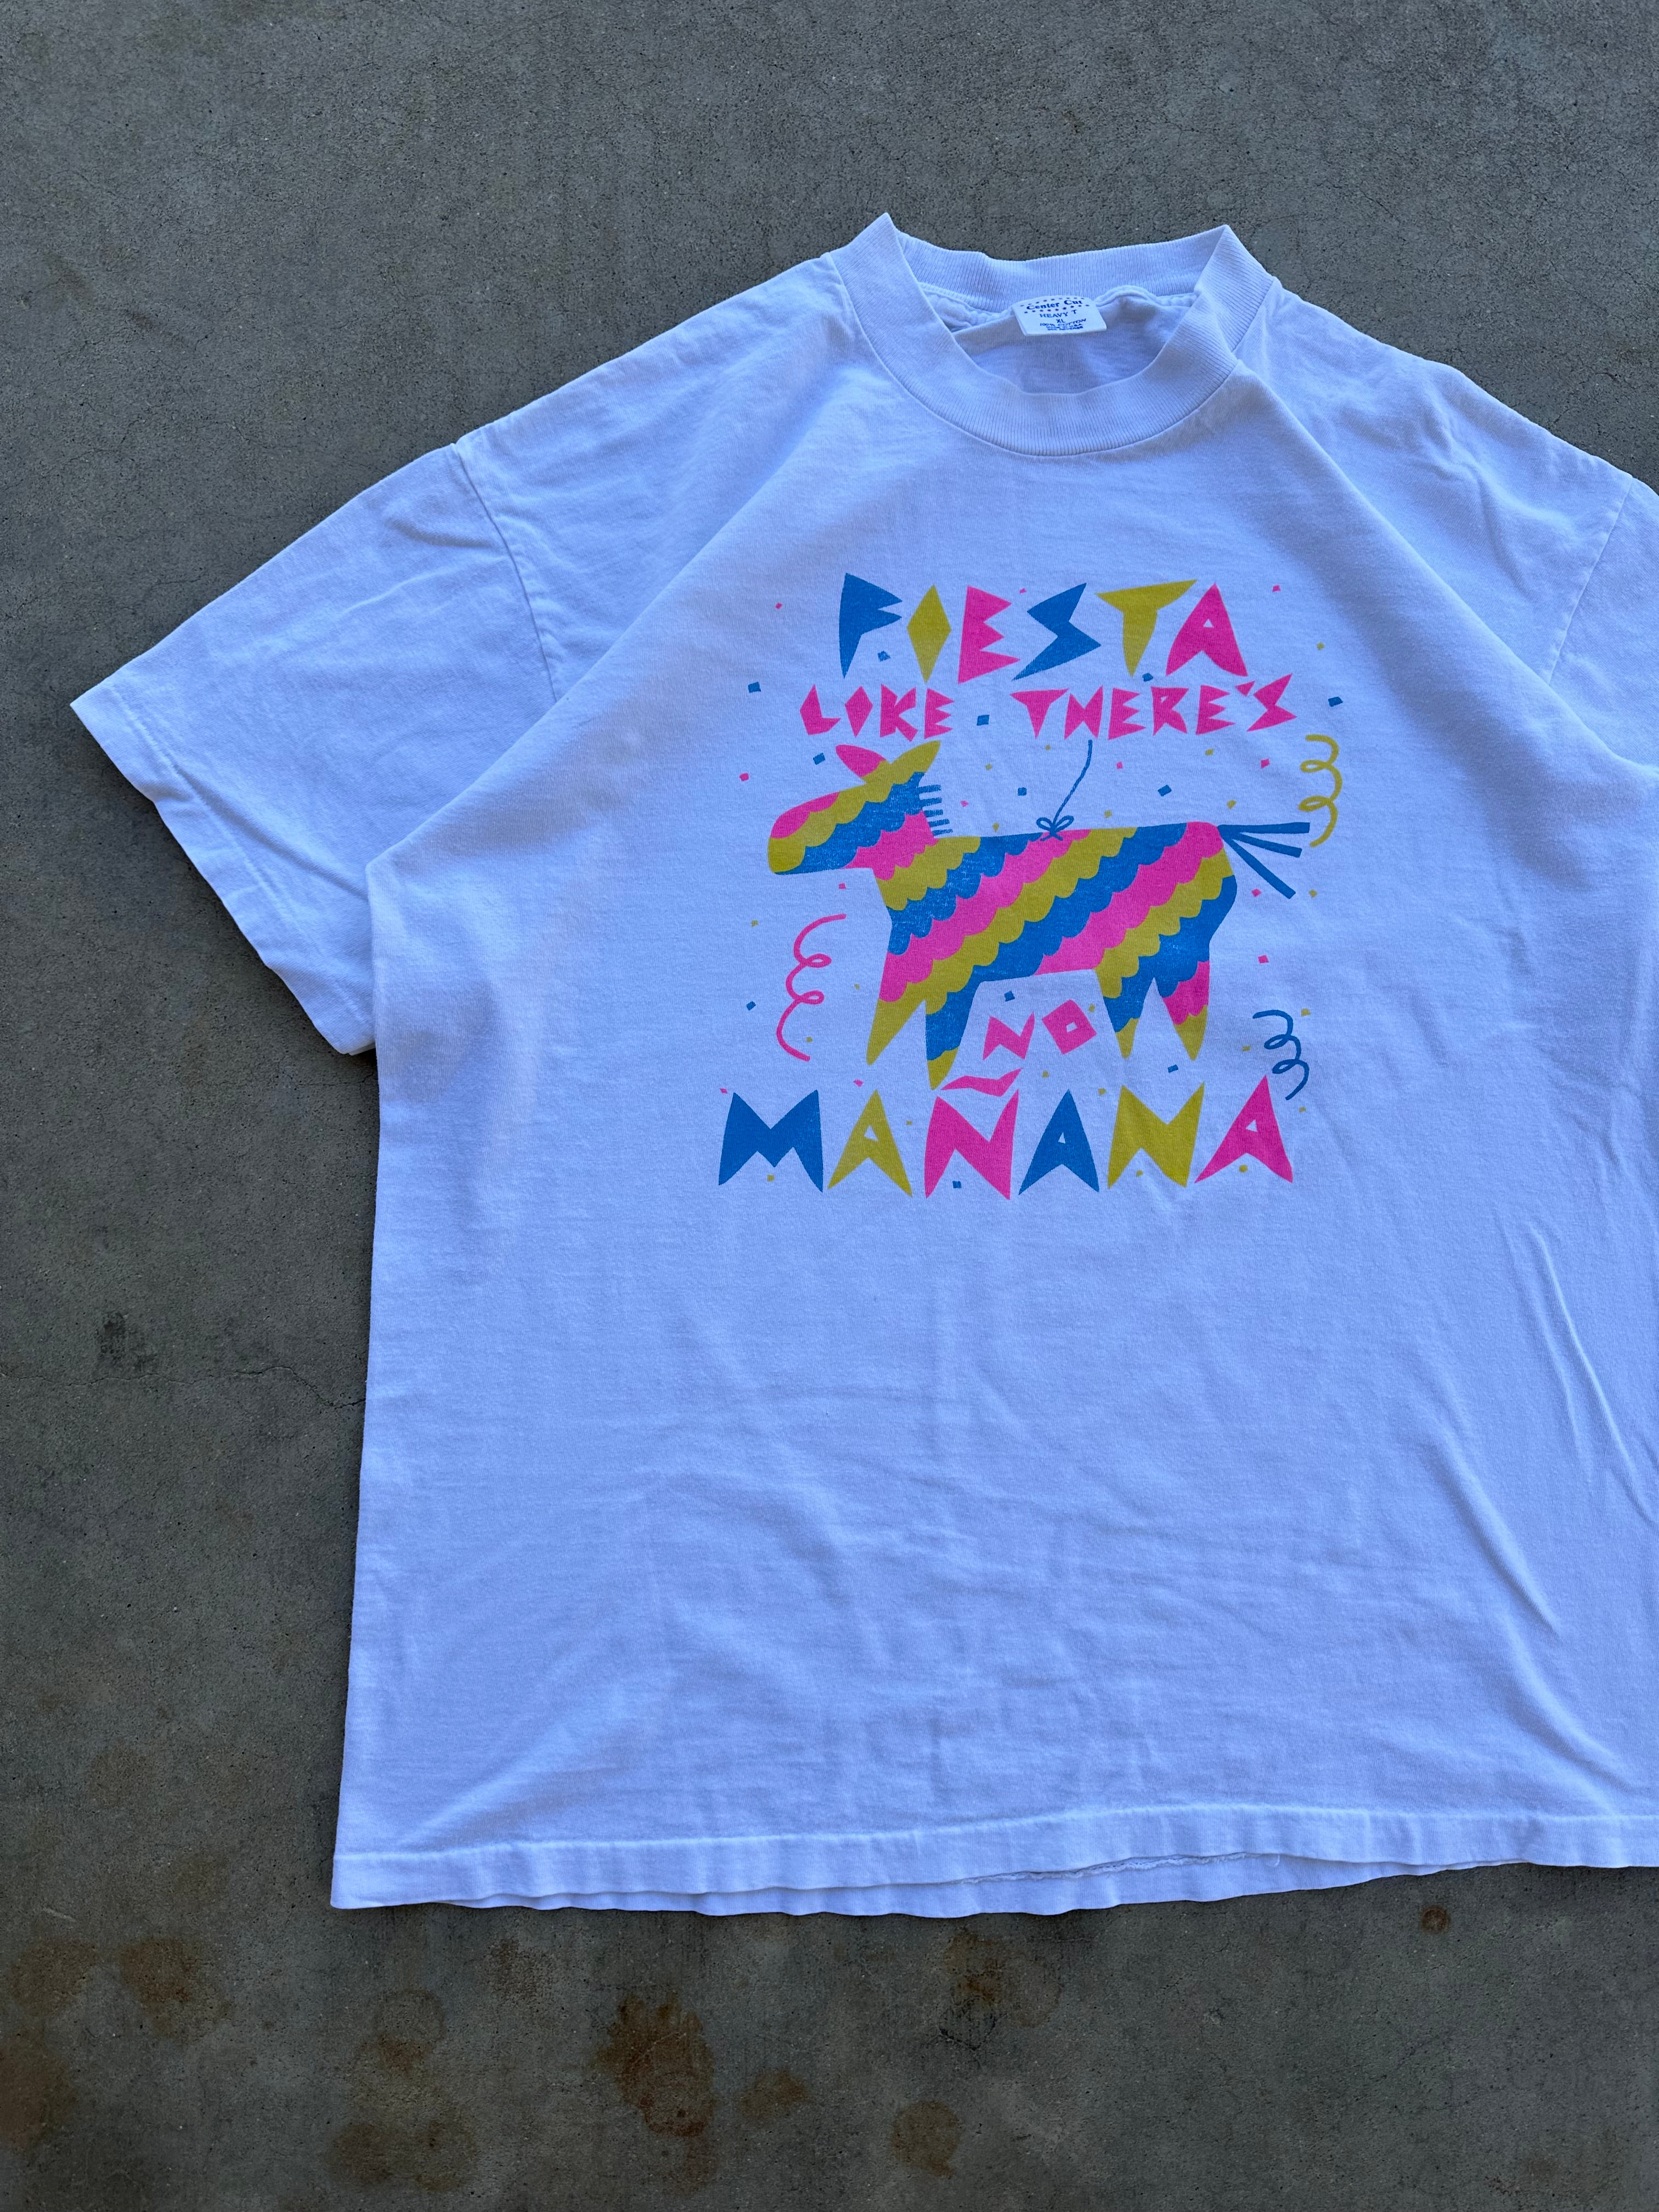 1990s Fiesta Like There’s No Mañana T-Shirt (L/XL)